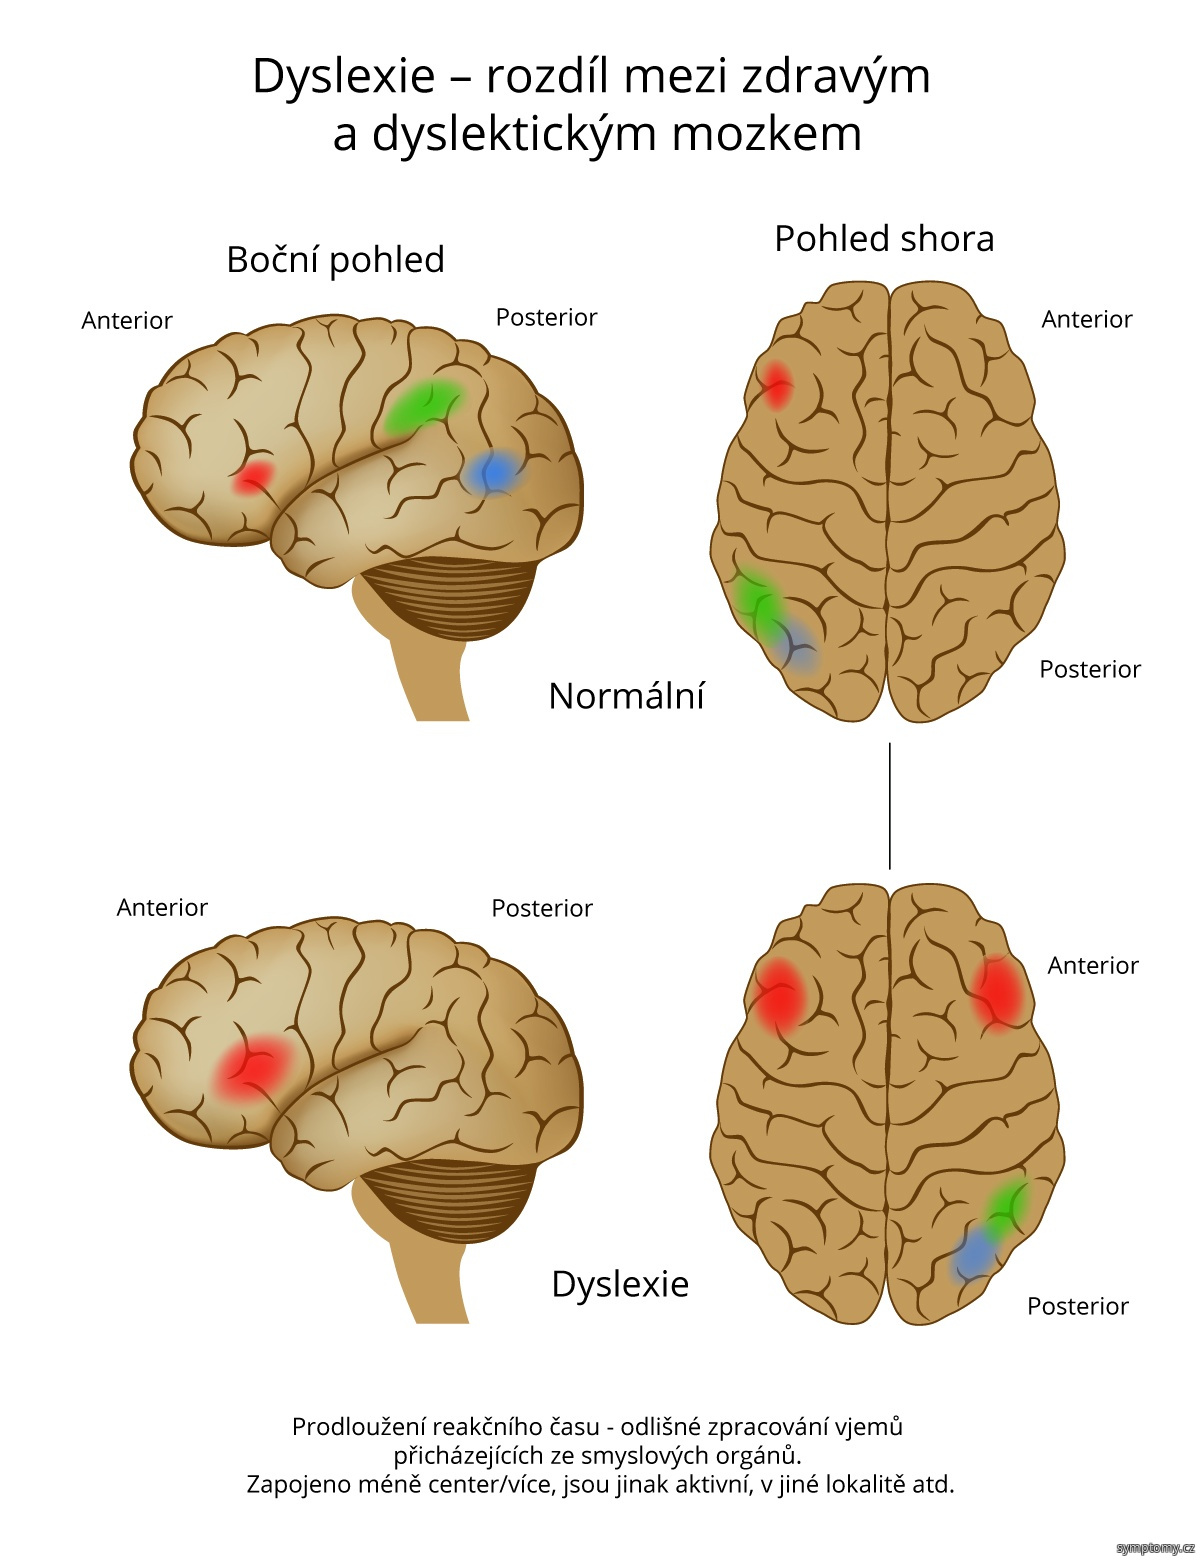 Dyslexie - rozdíl mezi zdravým a dyslektickým mozkem